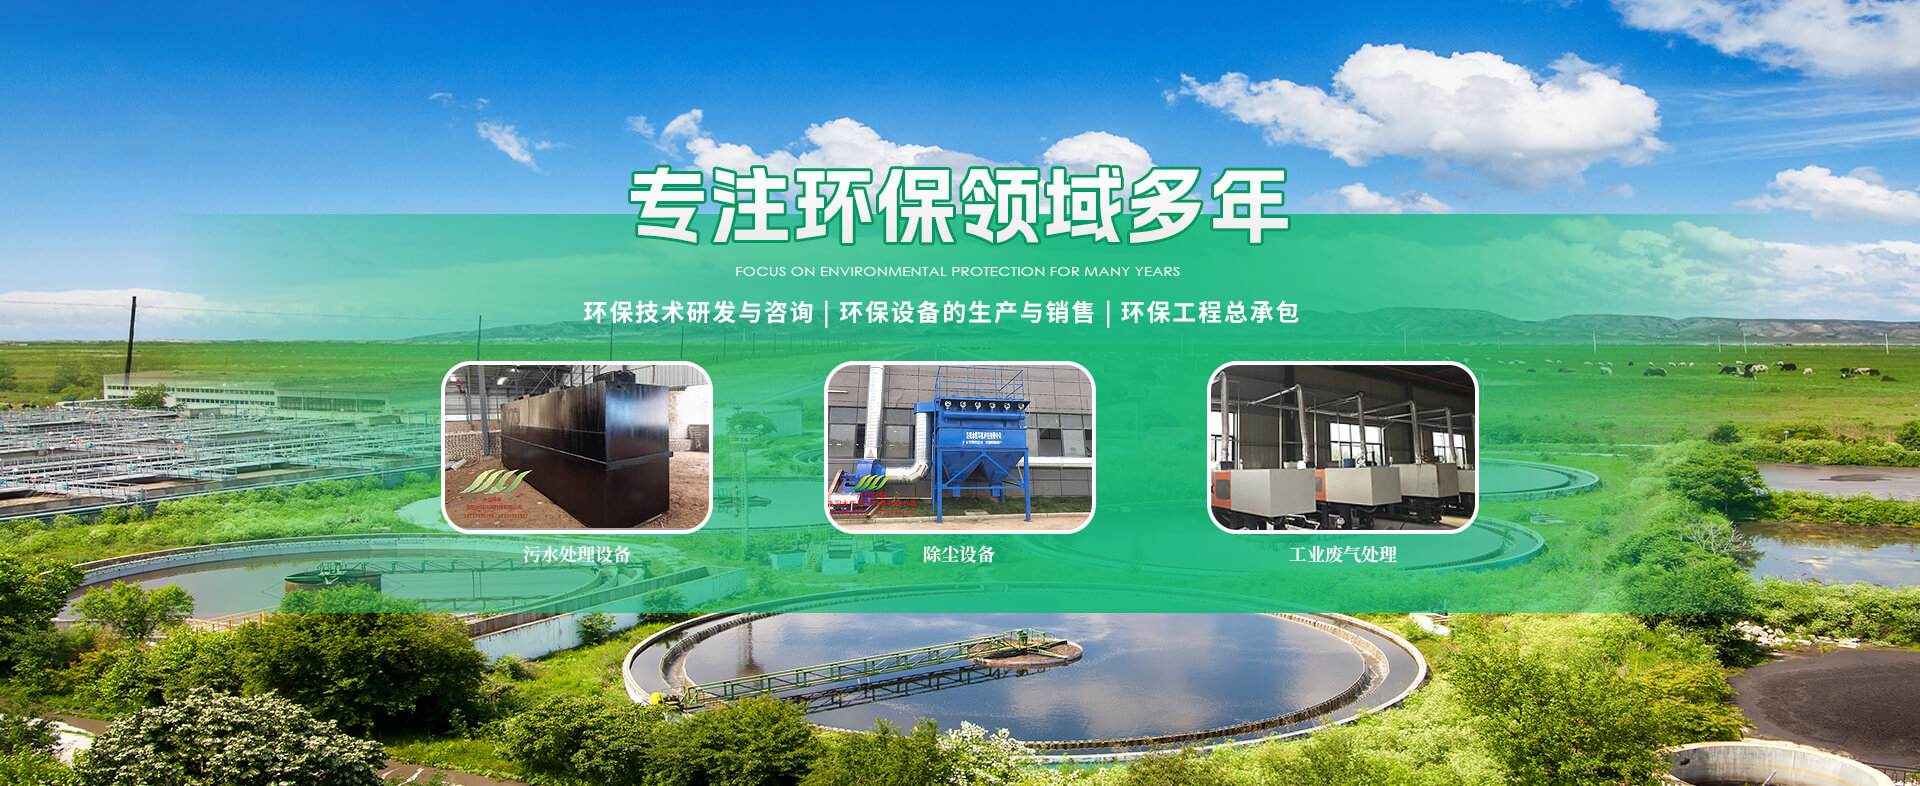 污水处理设备-一体化污水处理设备-77779193永利官网